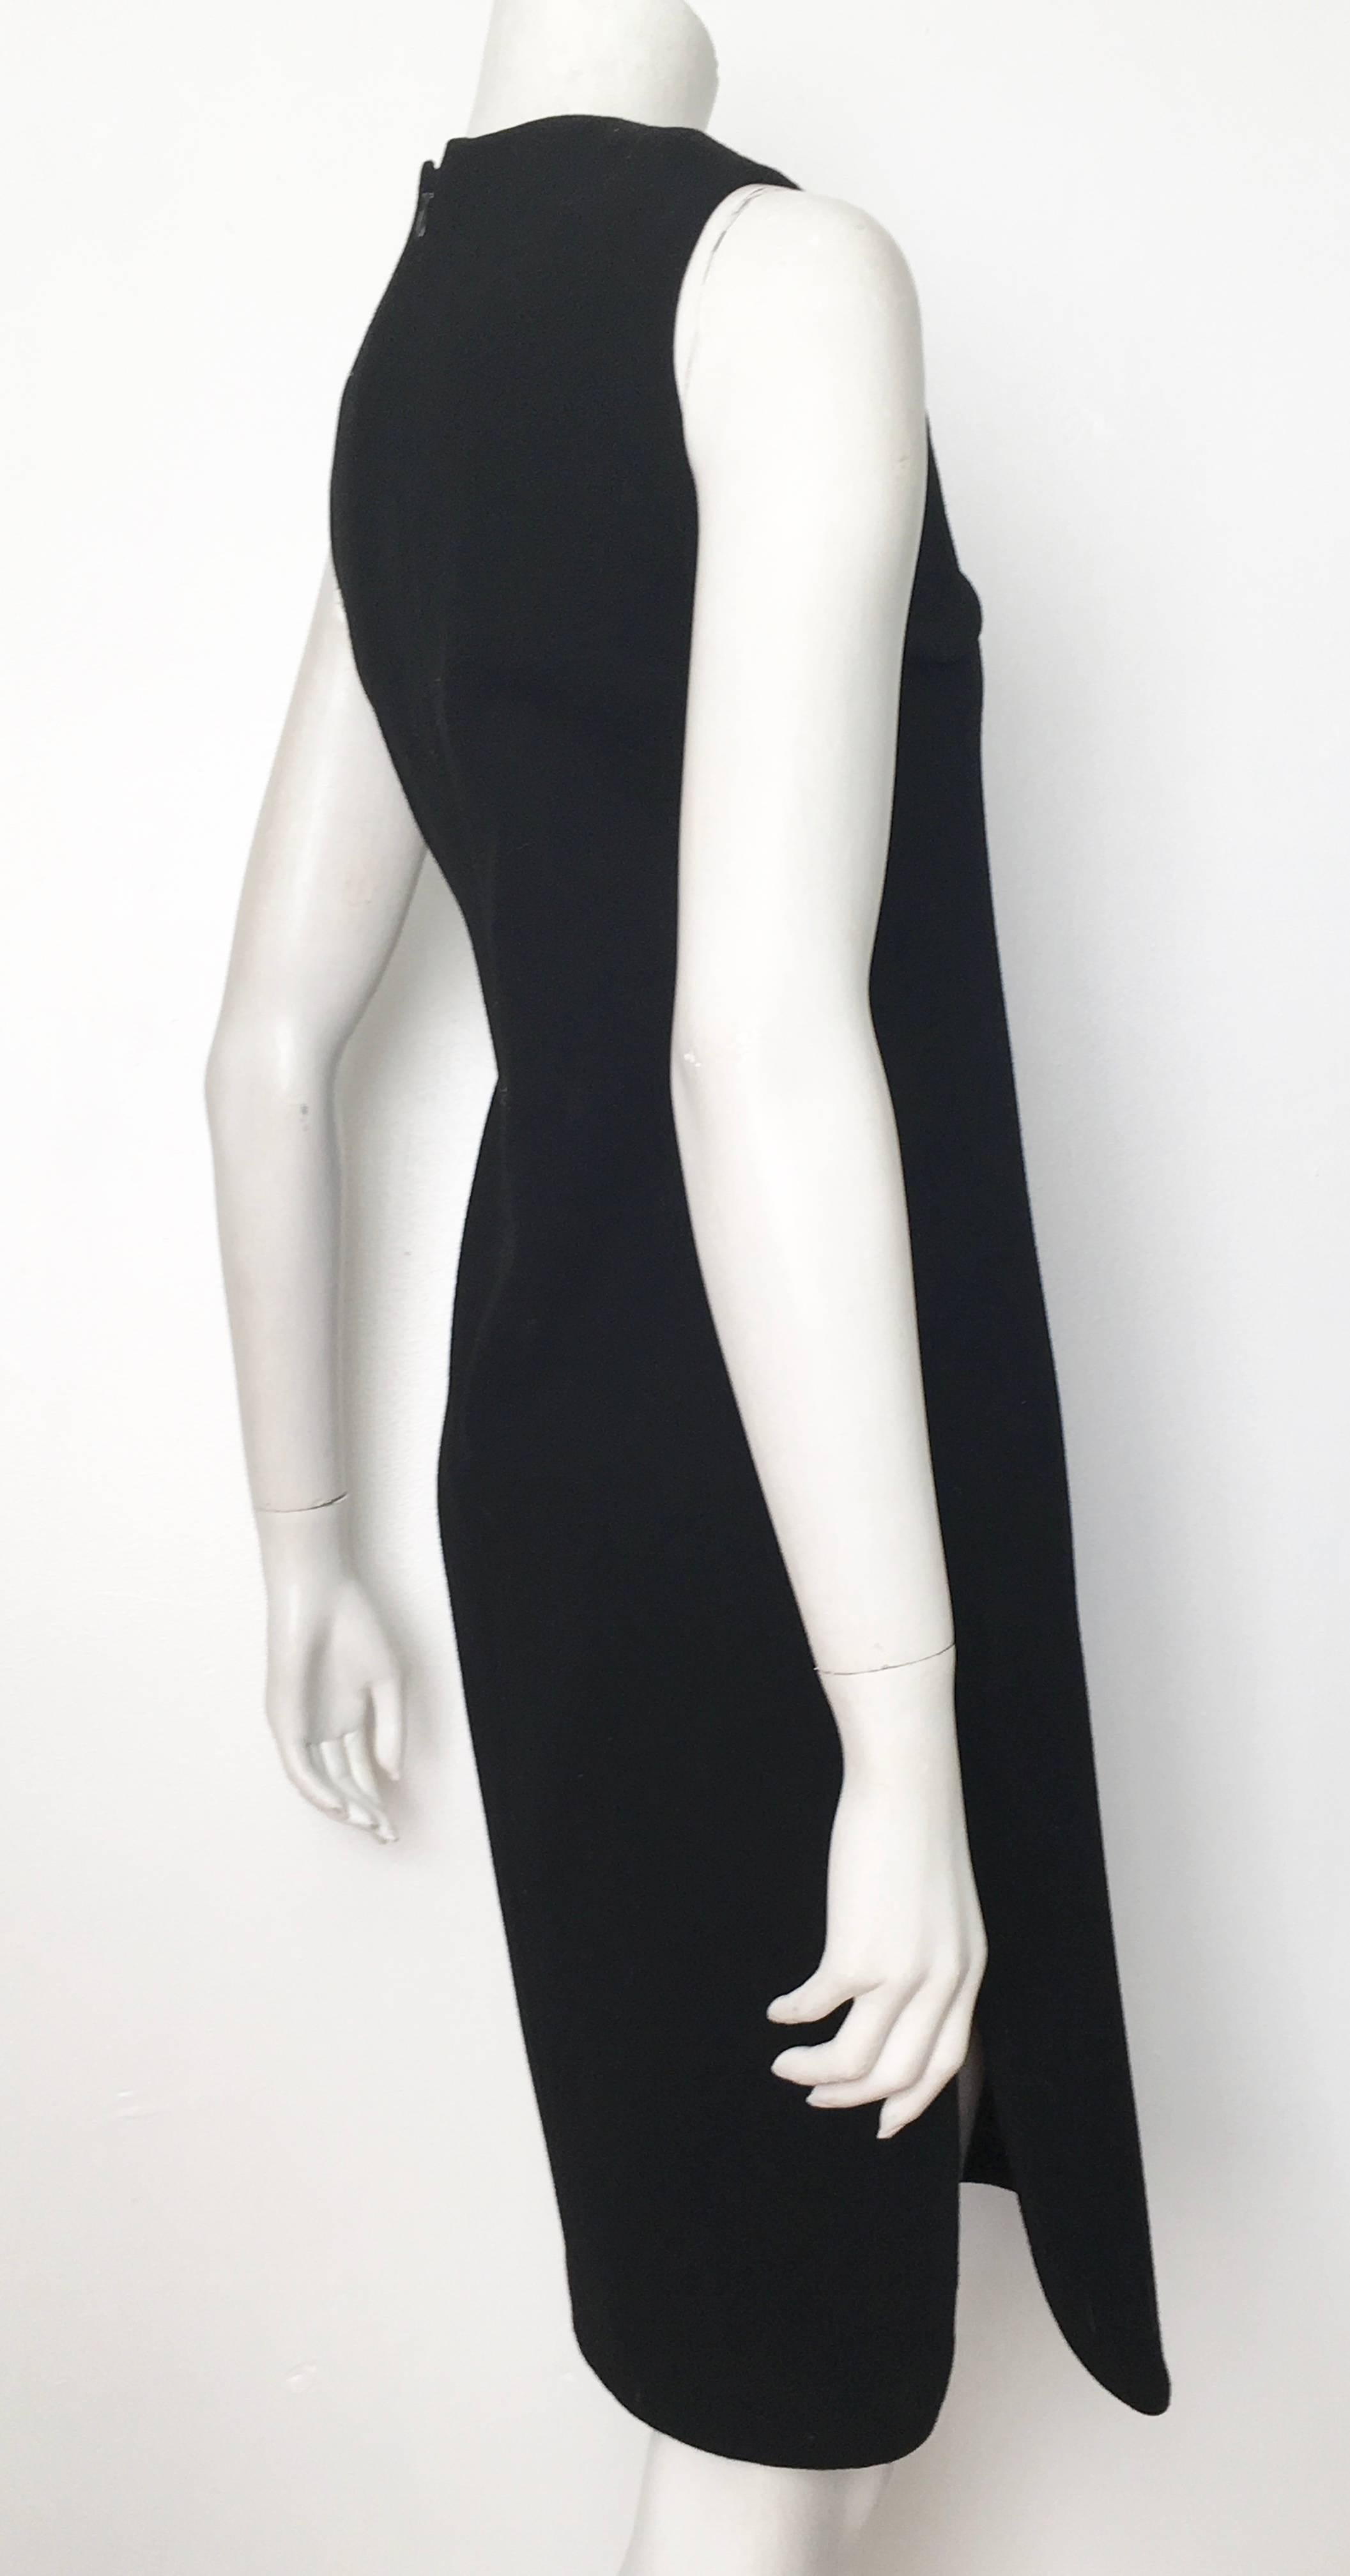 Pierre Cardin for Saks Fifth Avenue 1971 Black Wool Sleeveless Dress Size 6. 3